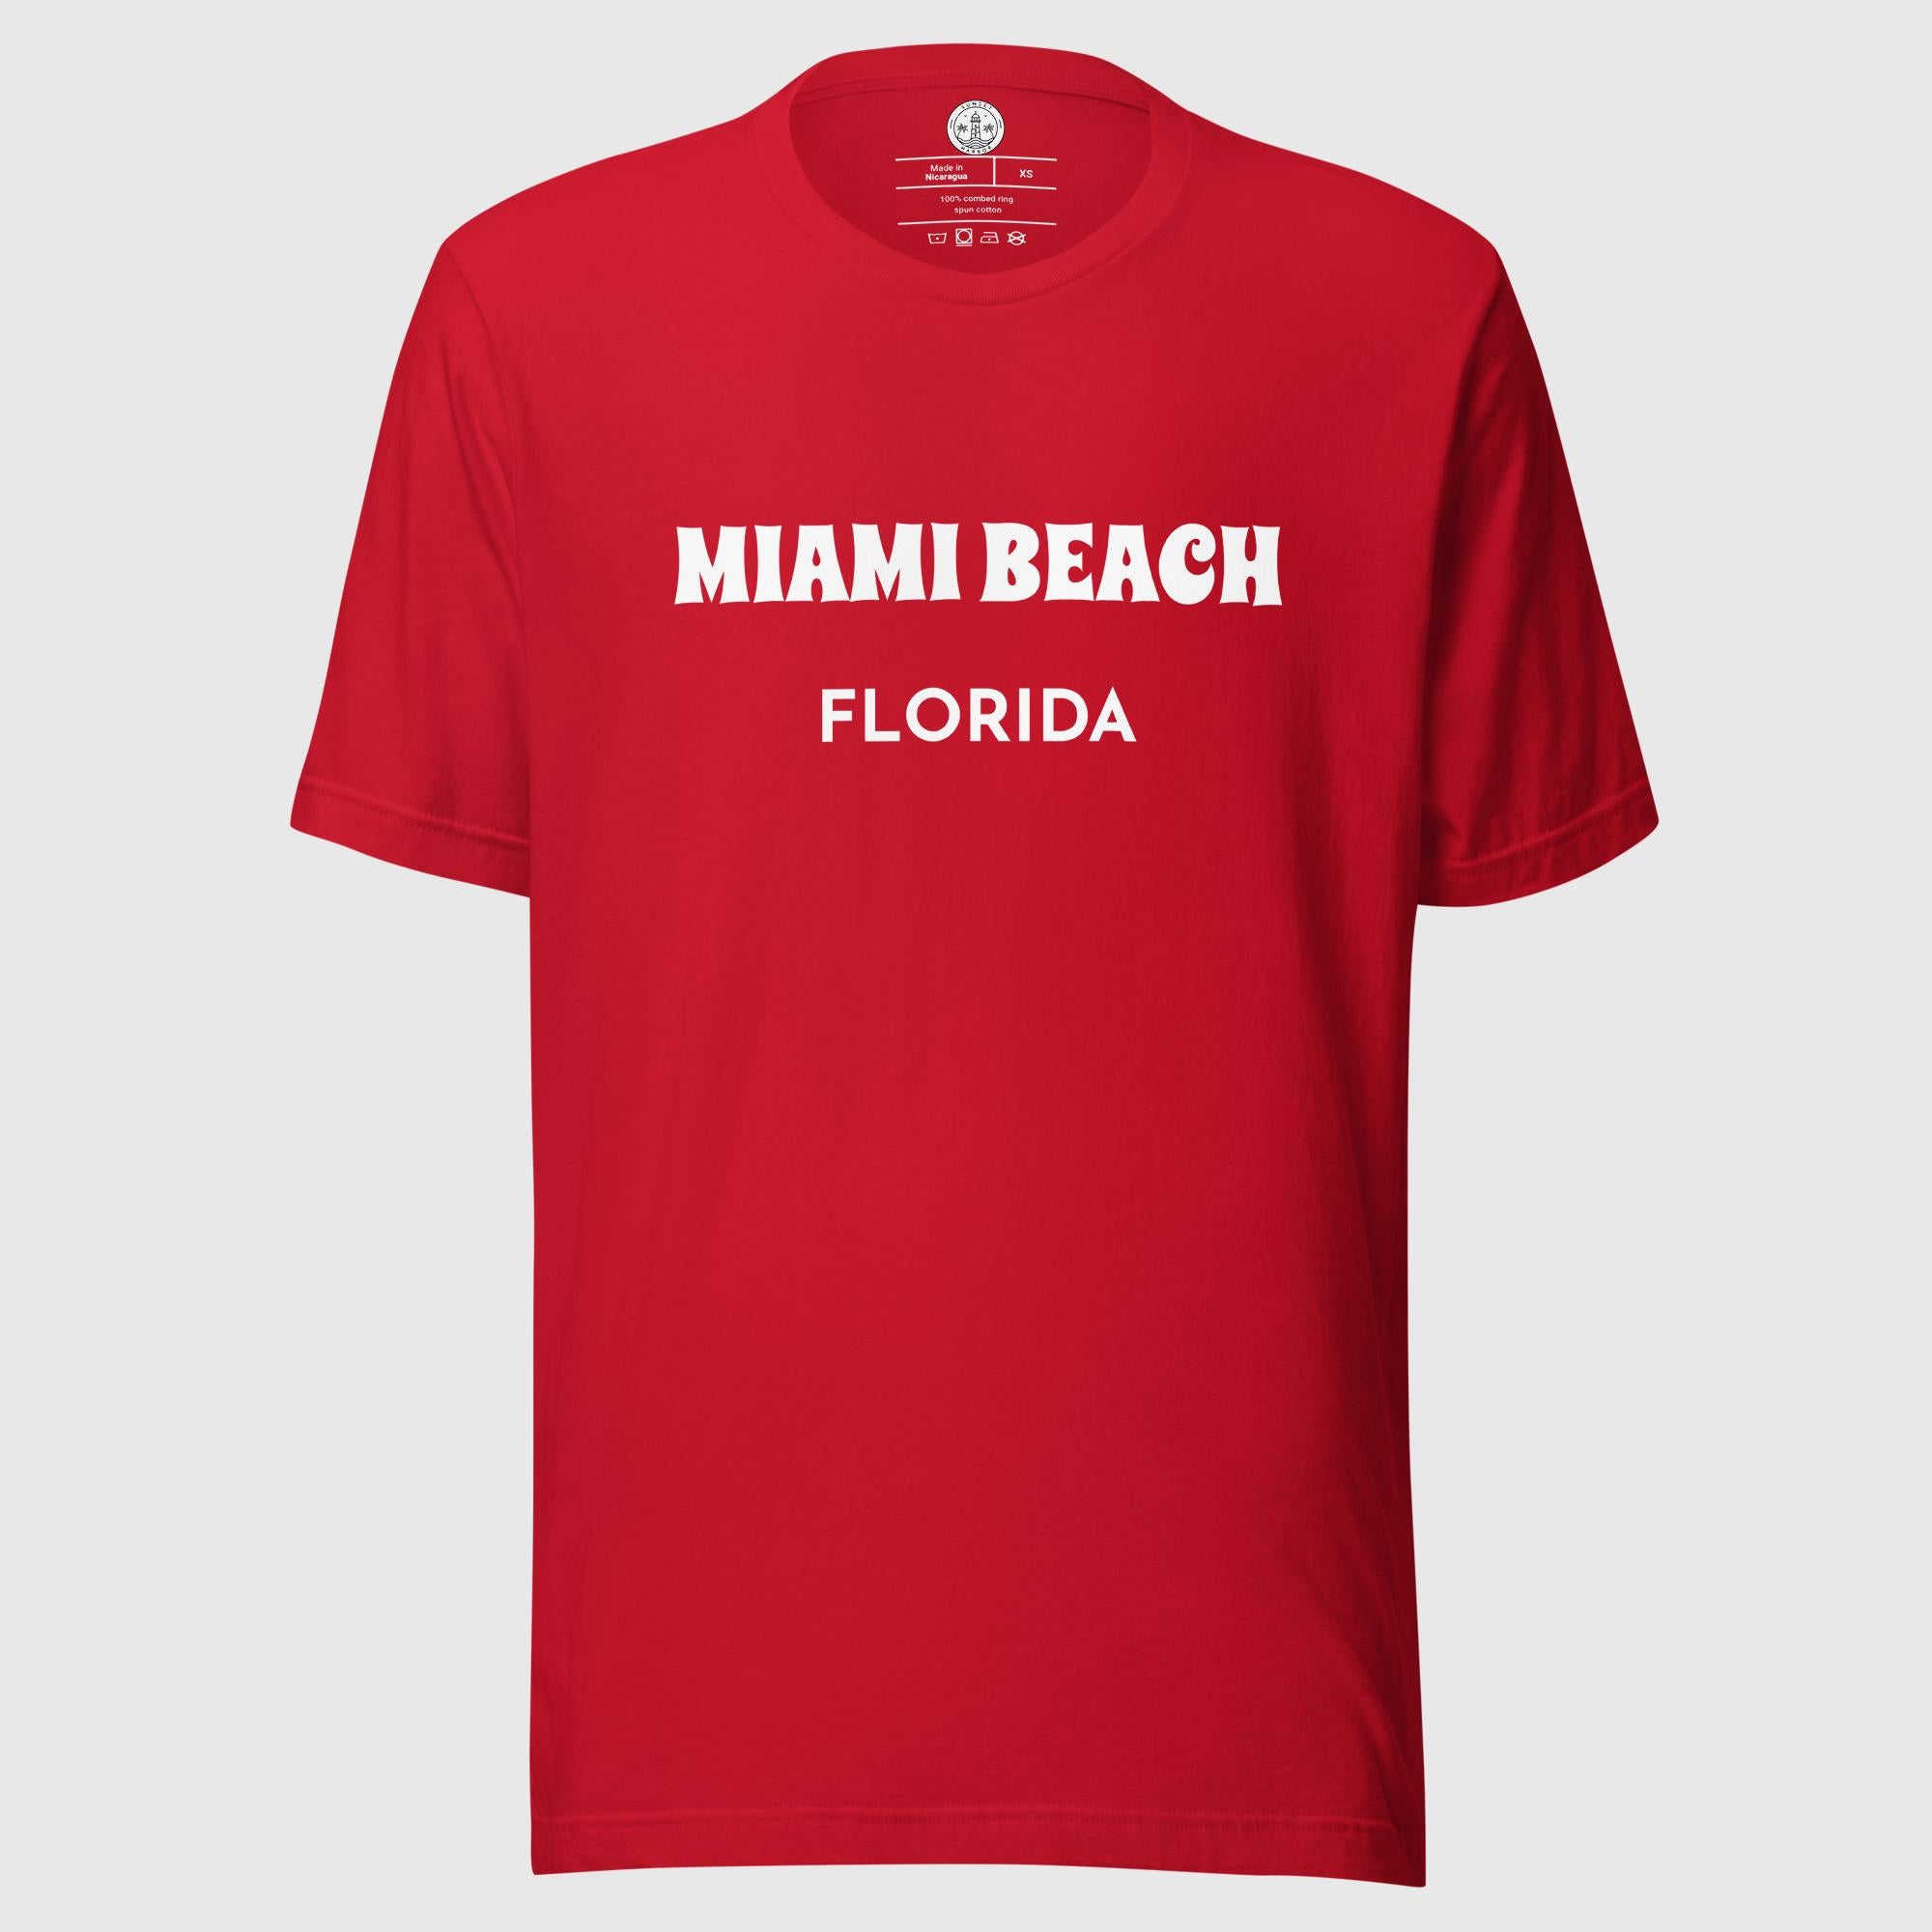 Camiseta unisex - Miami Beach